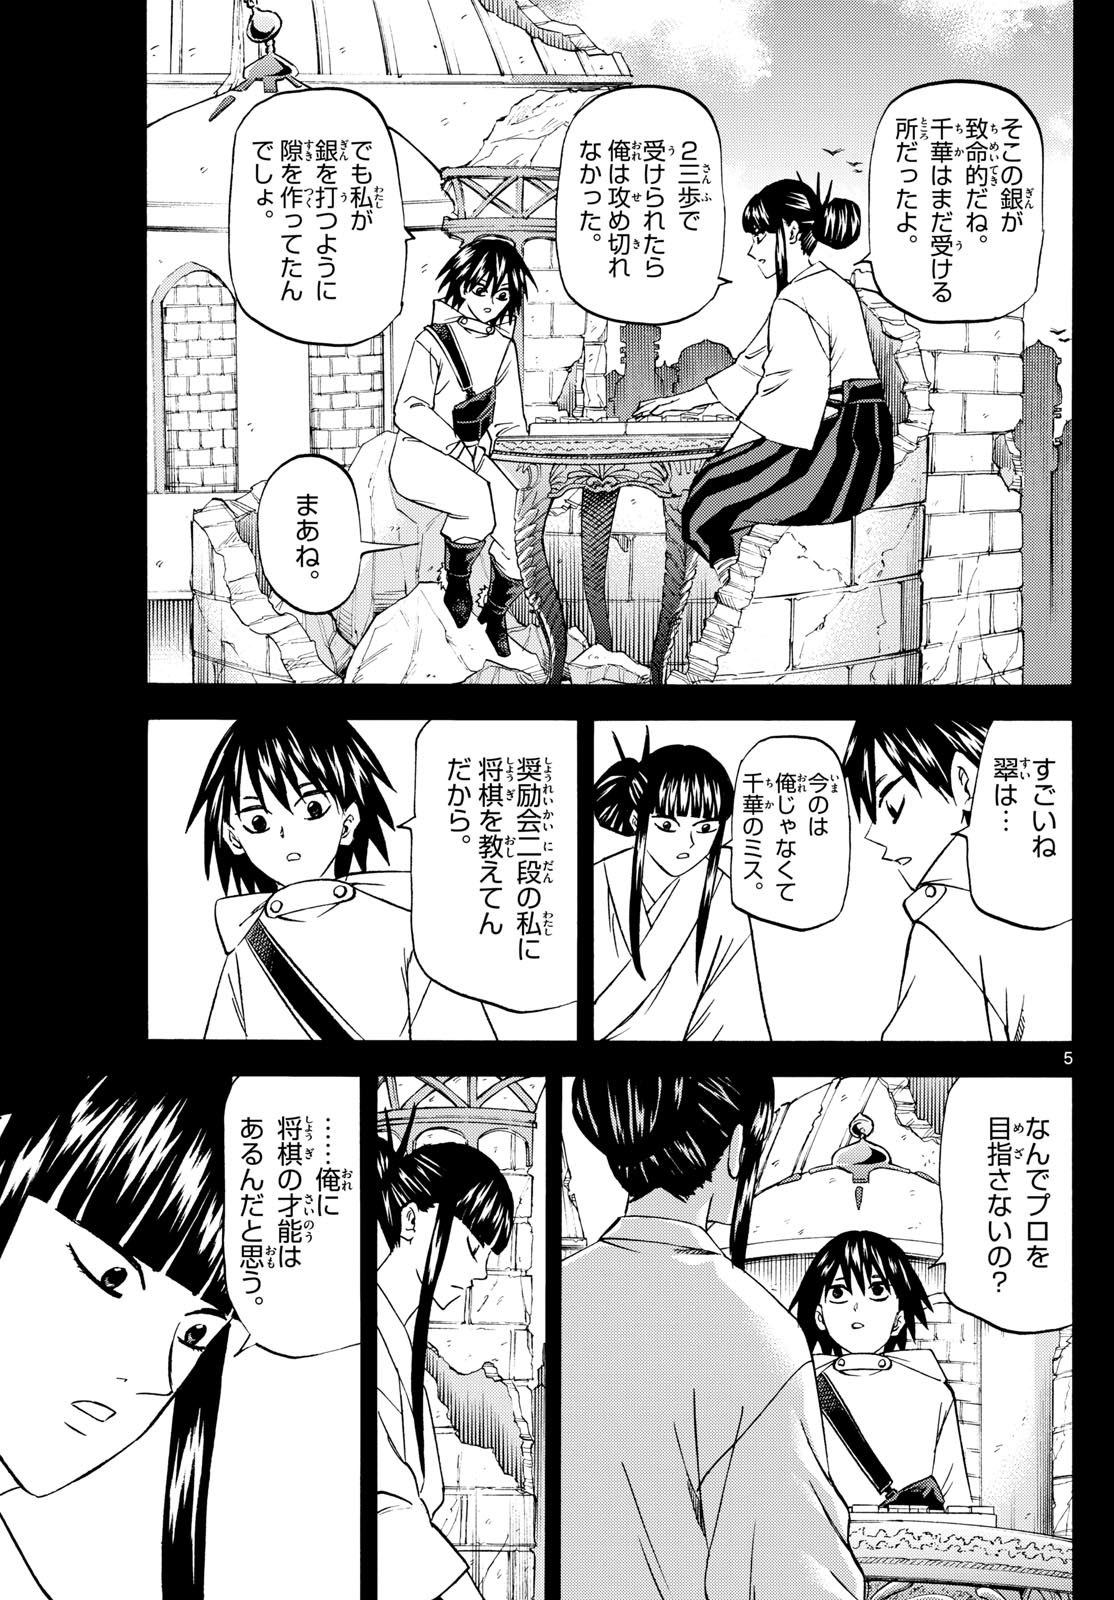 Tatsu to Ichigo - Chapter 194 - Page 5